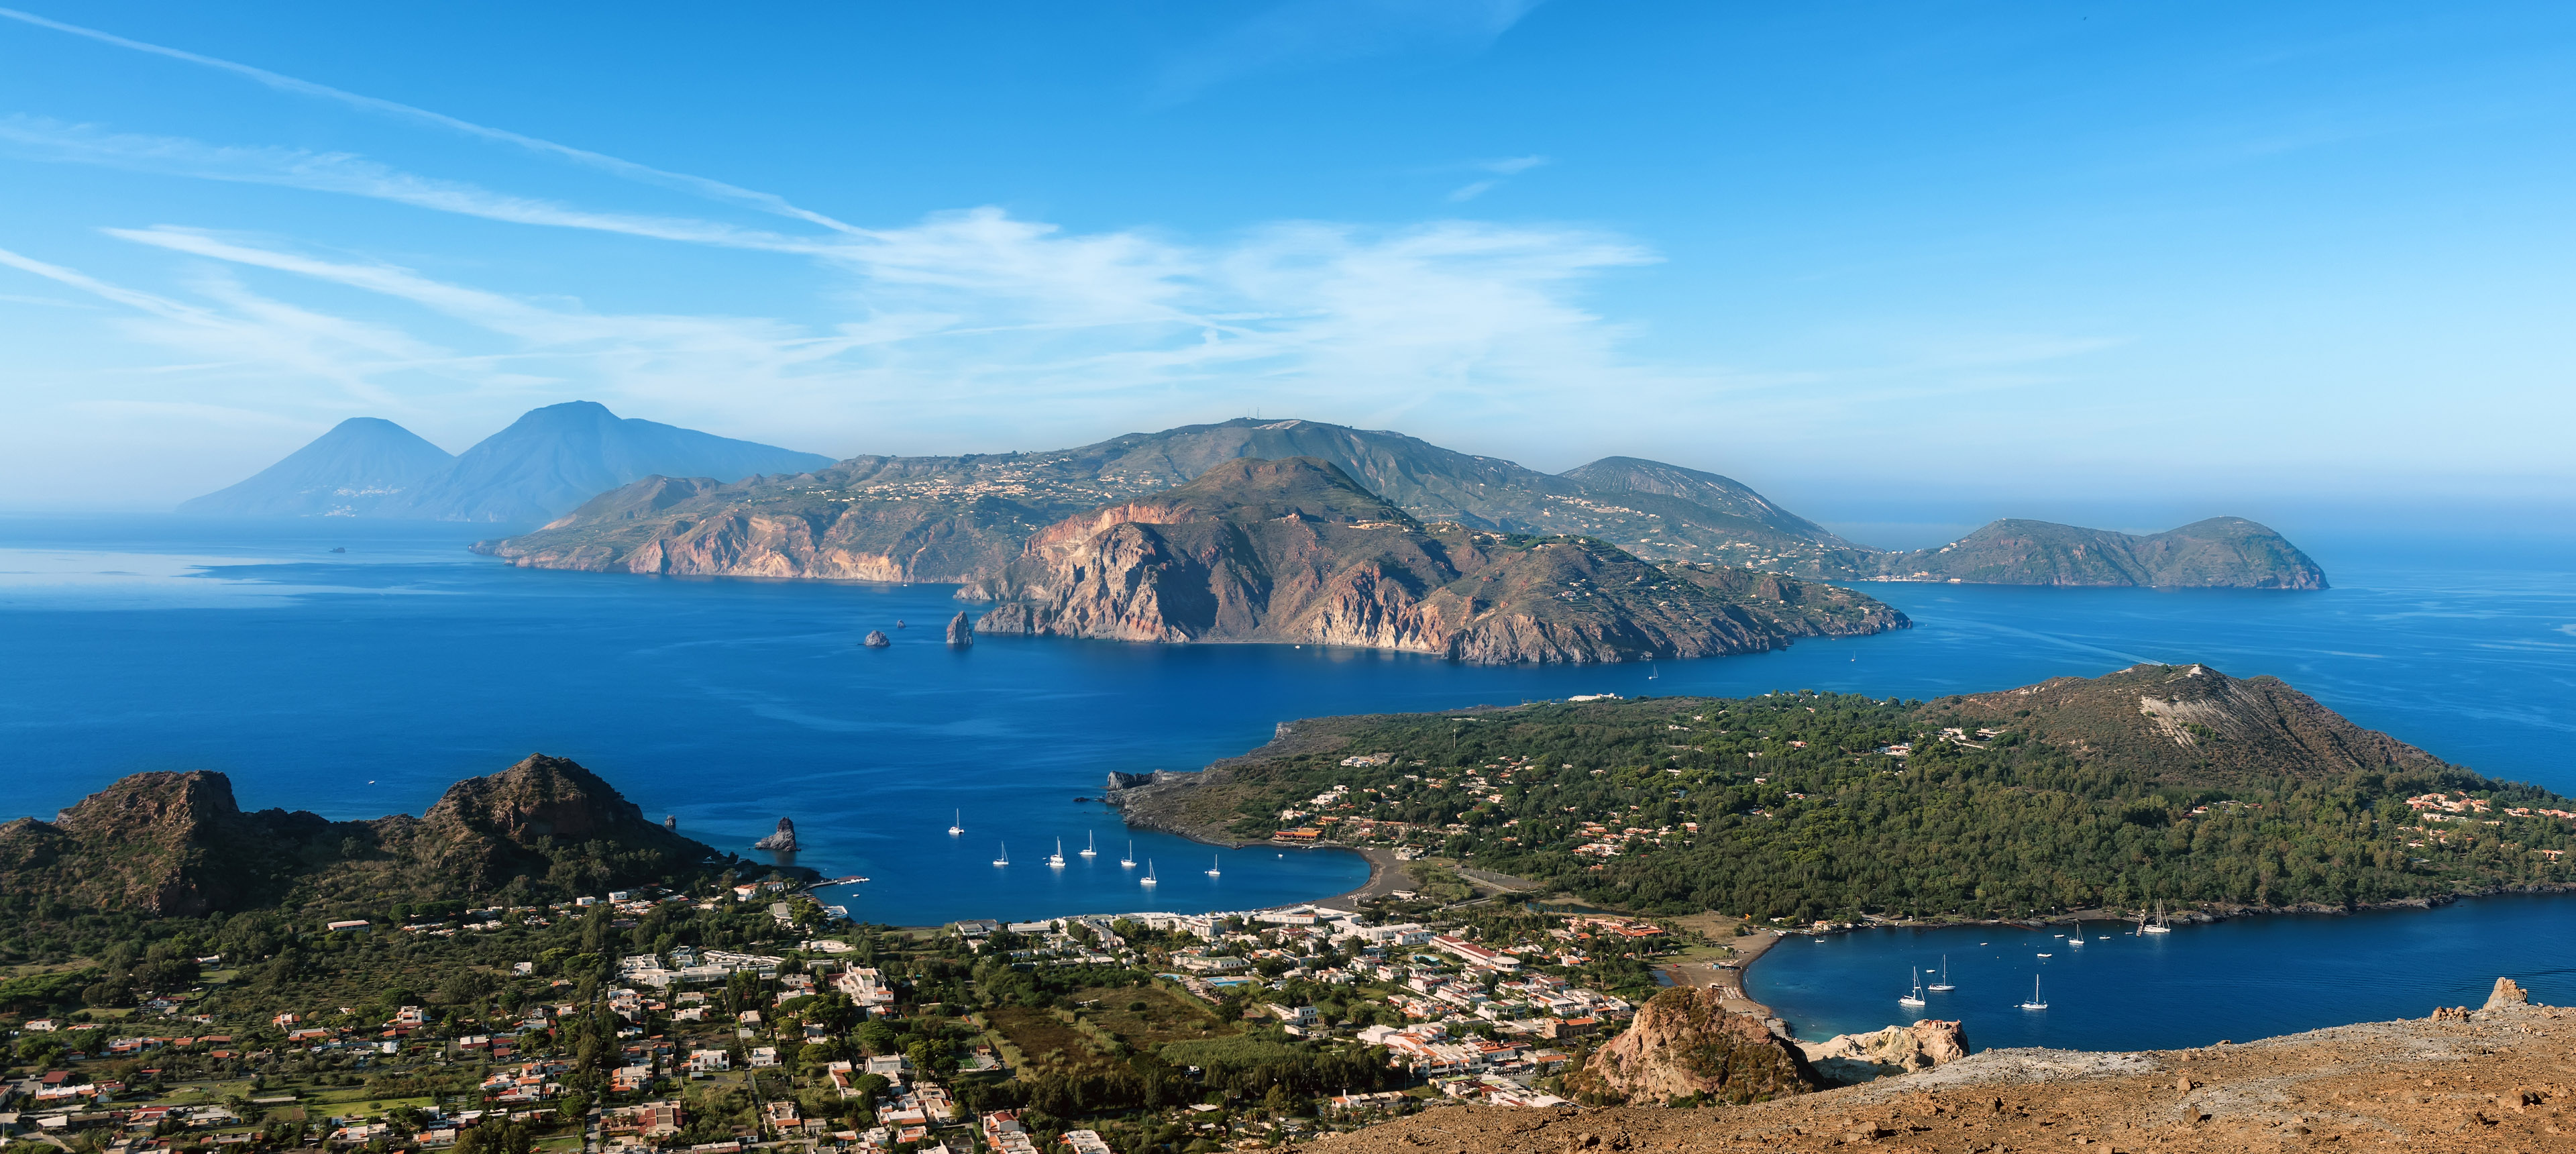 Panoramablick über Vulcano und die liparischen Inseln, Italien